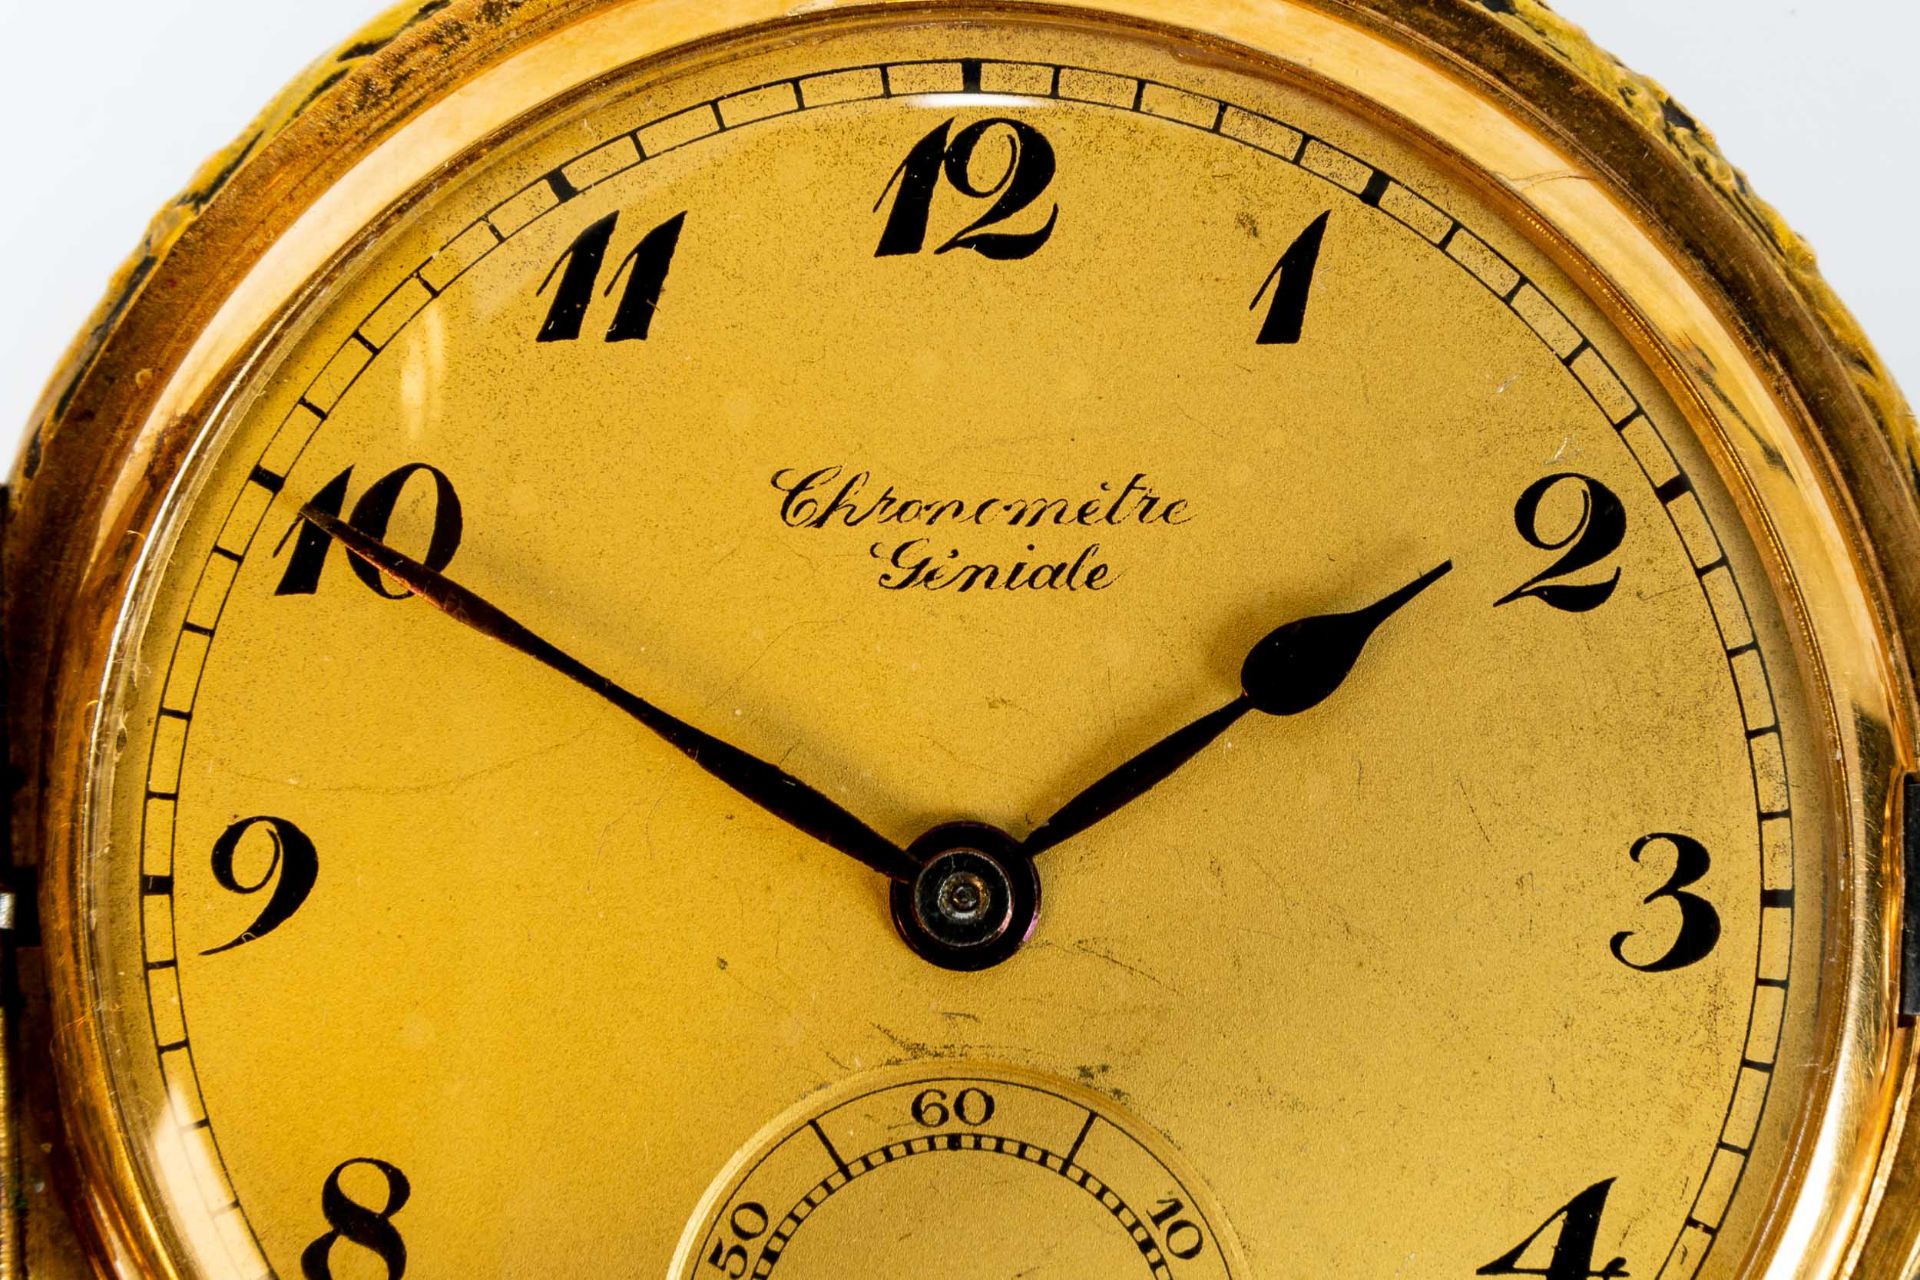 "Chronometre Geniale", goldene Herren - Sprungdeckeltaschenuhr; Ziffernblatt mit arabischen Zahlen, - Bild 3 aus 9